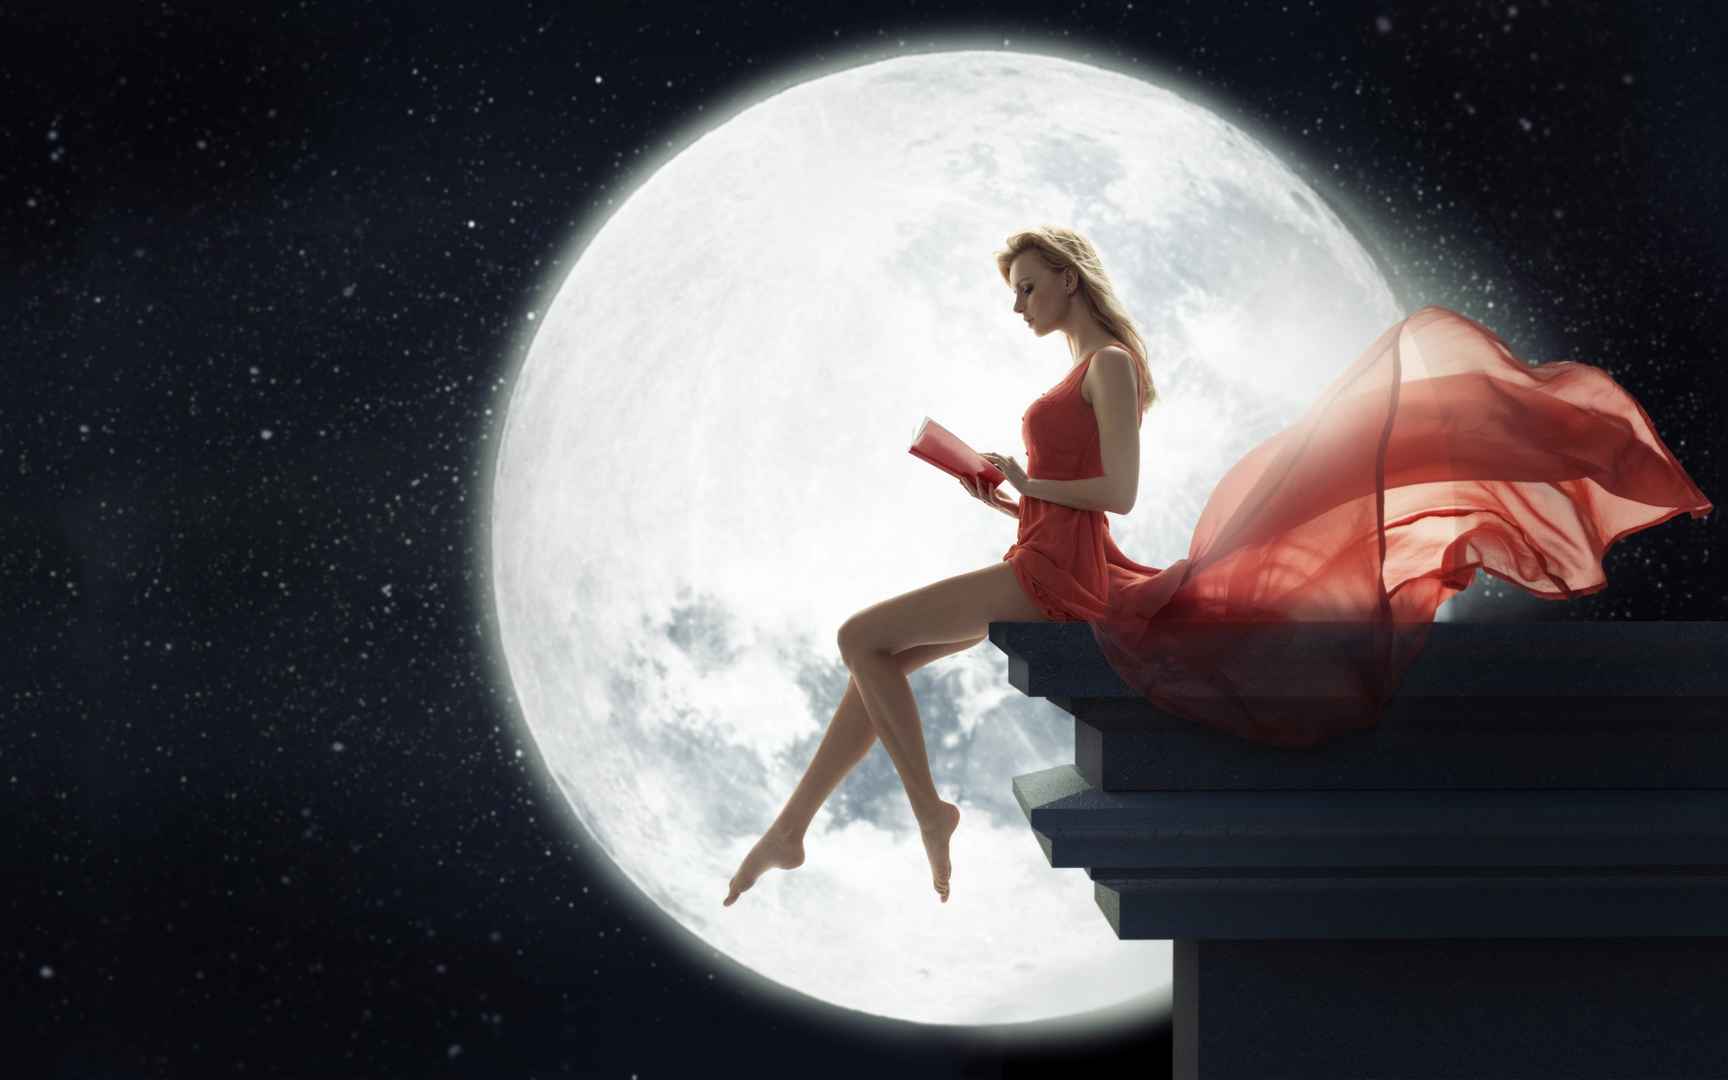 硕大的月亮坐在屋顶穿着红裙的欧美美女唯美摄影壁纸-